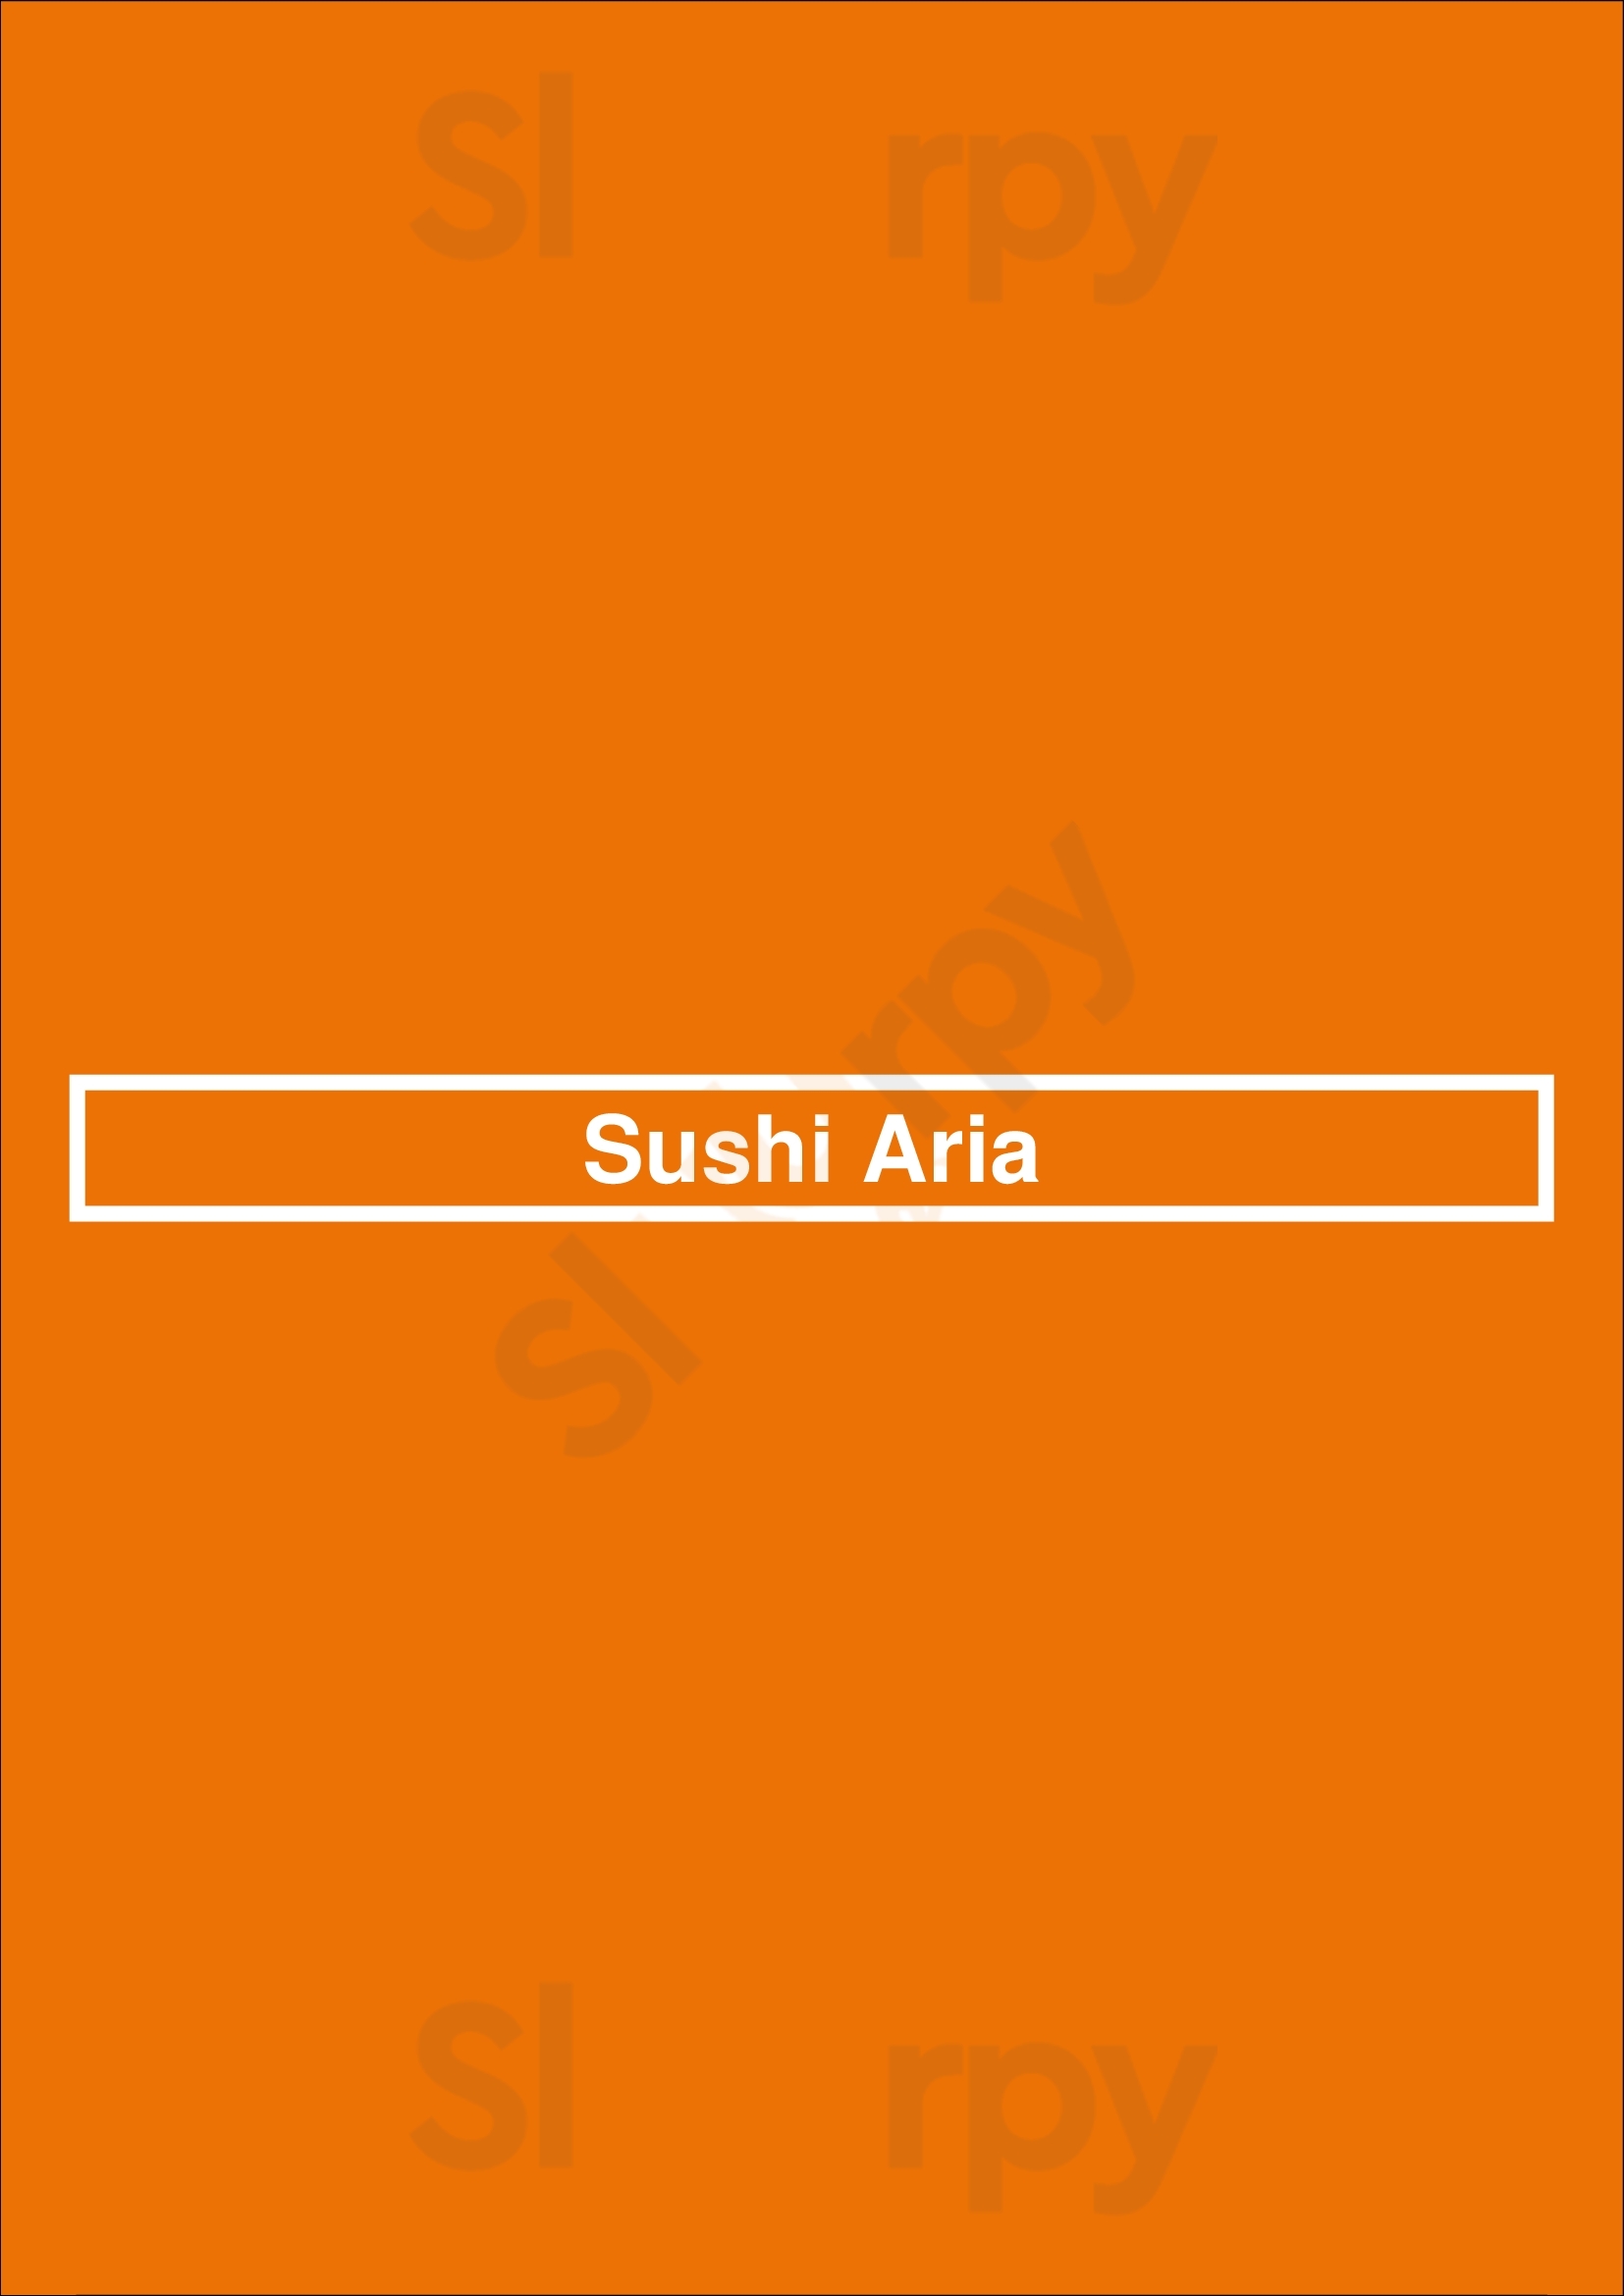 Sushi Aria Japanese Restaurant Richmond Menu - 1